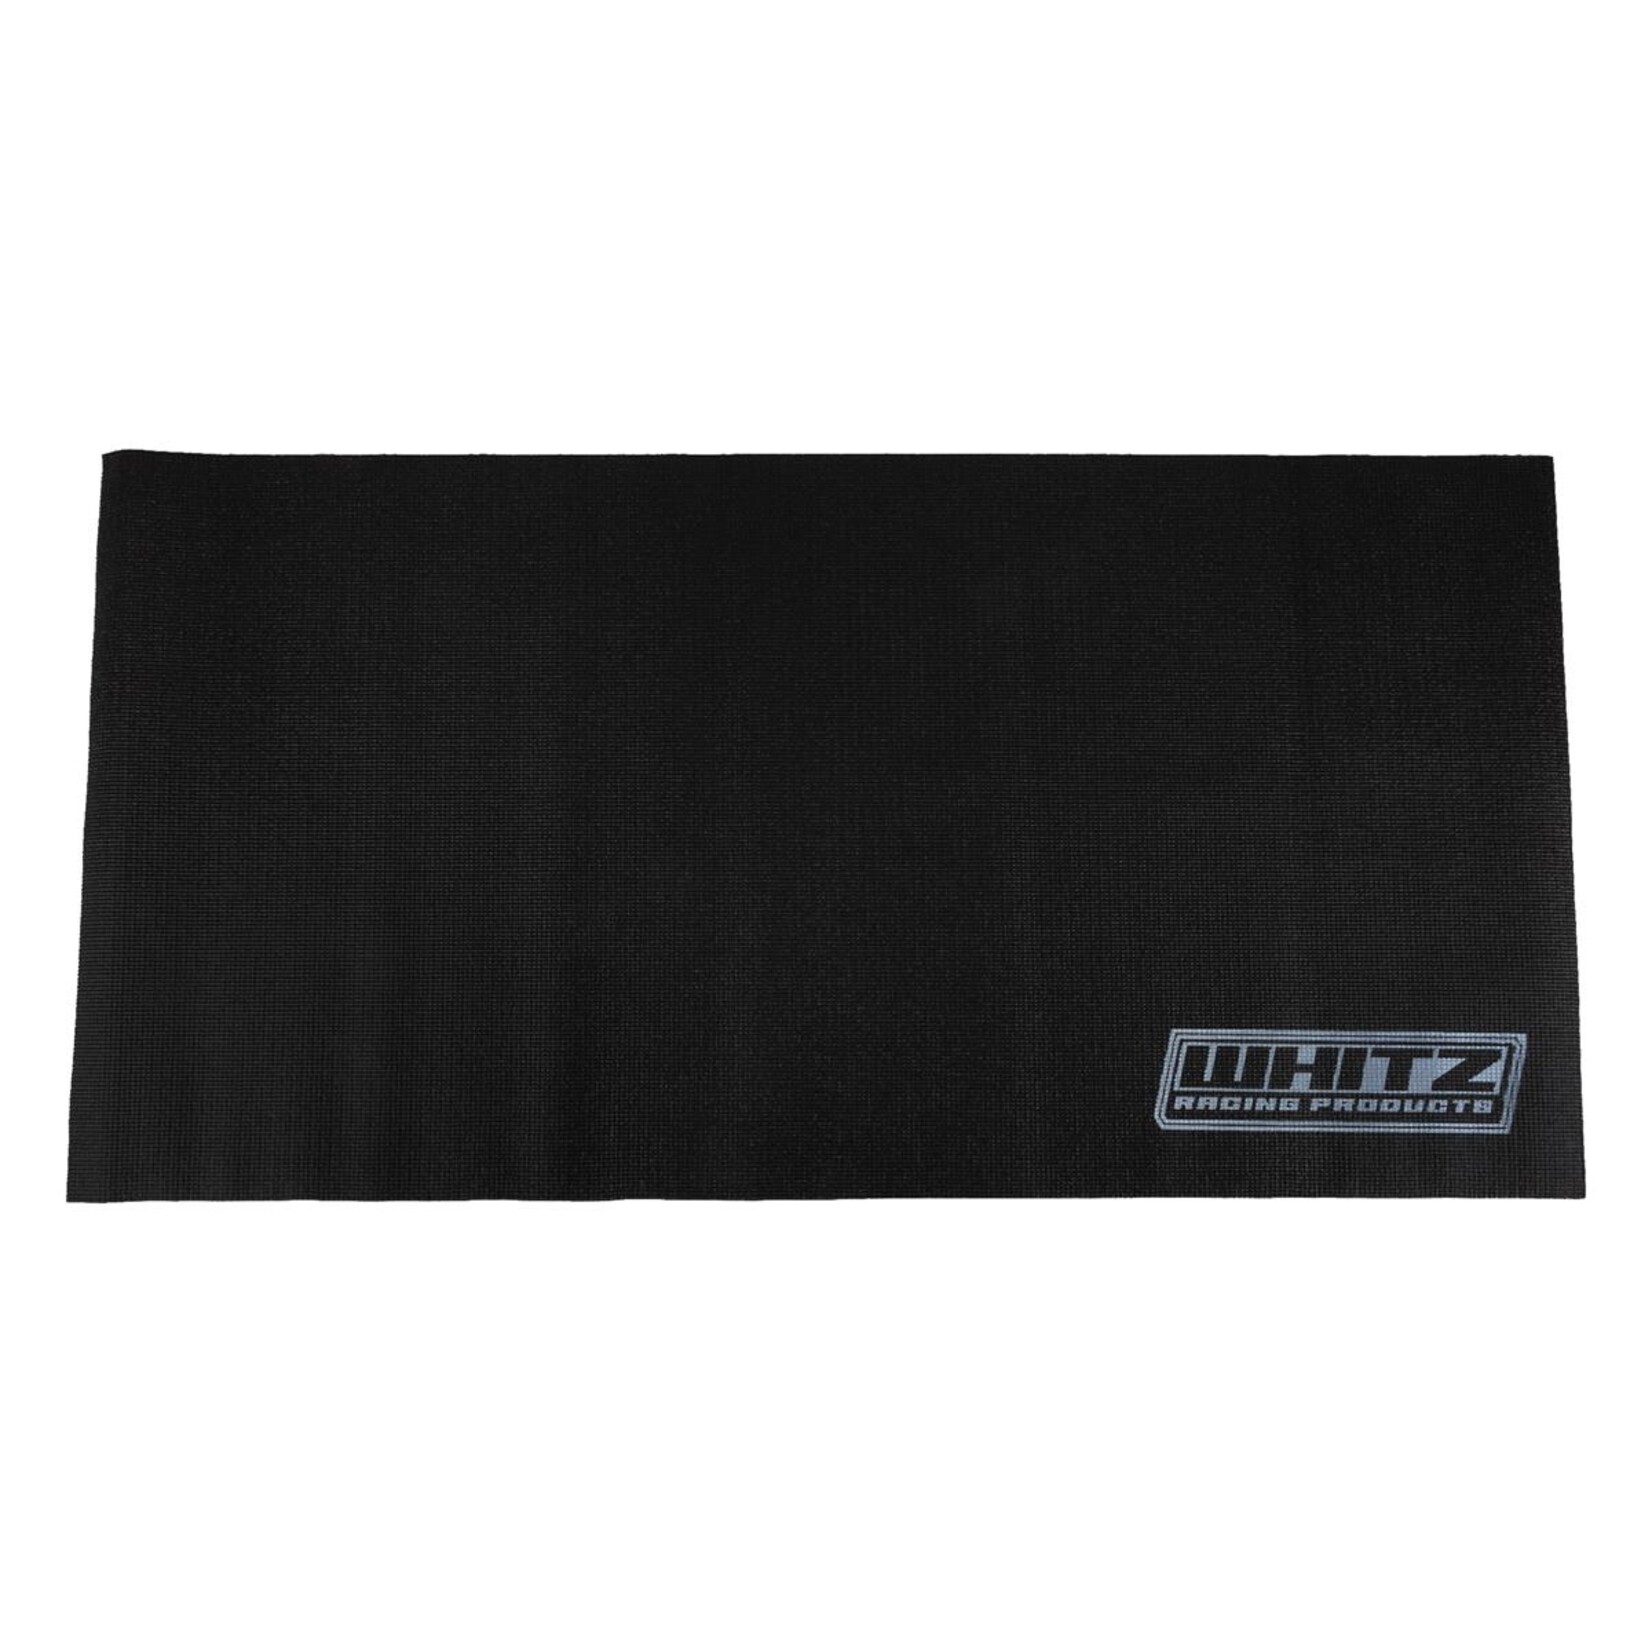 Whitz Racing Products Whitz Racing Products Pit Mat (122cm x 66cm) #WRP-PITMAT